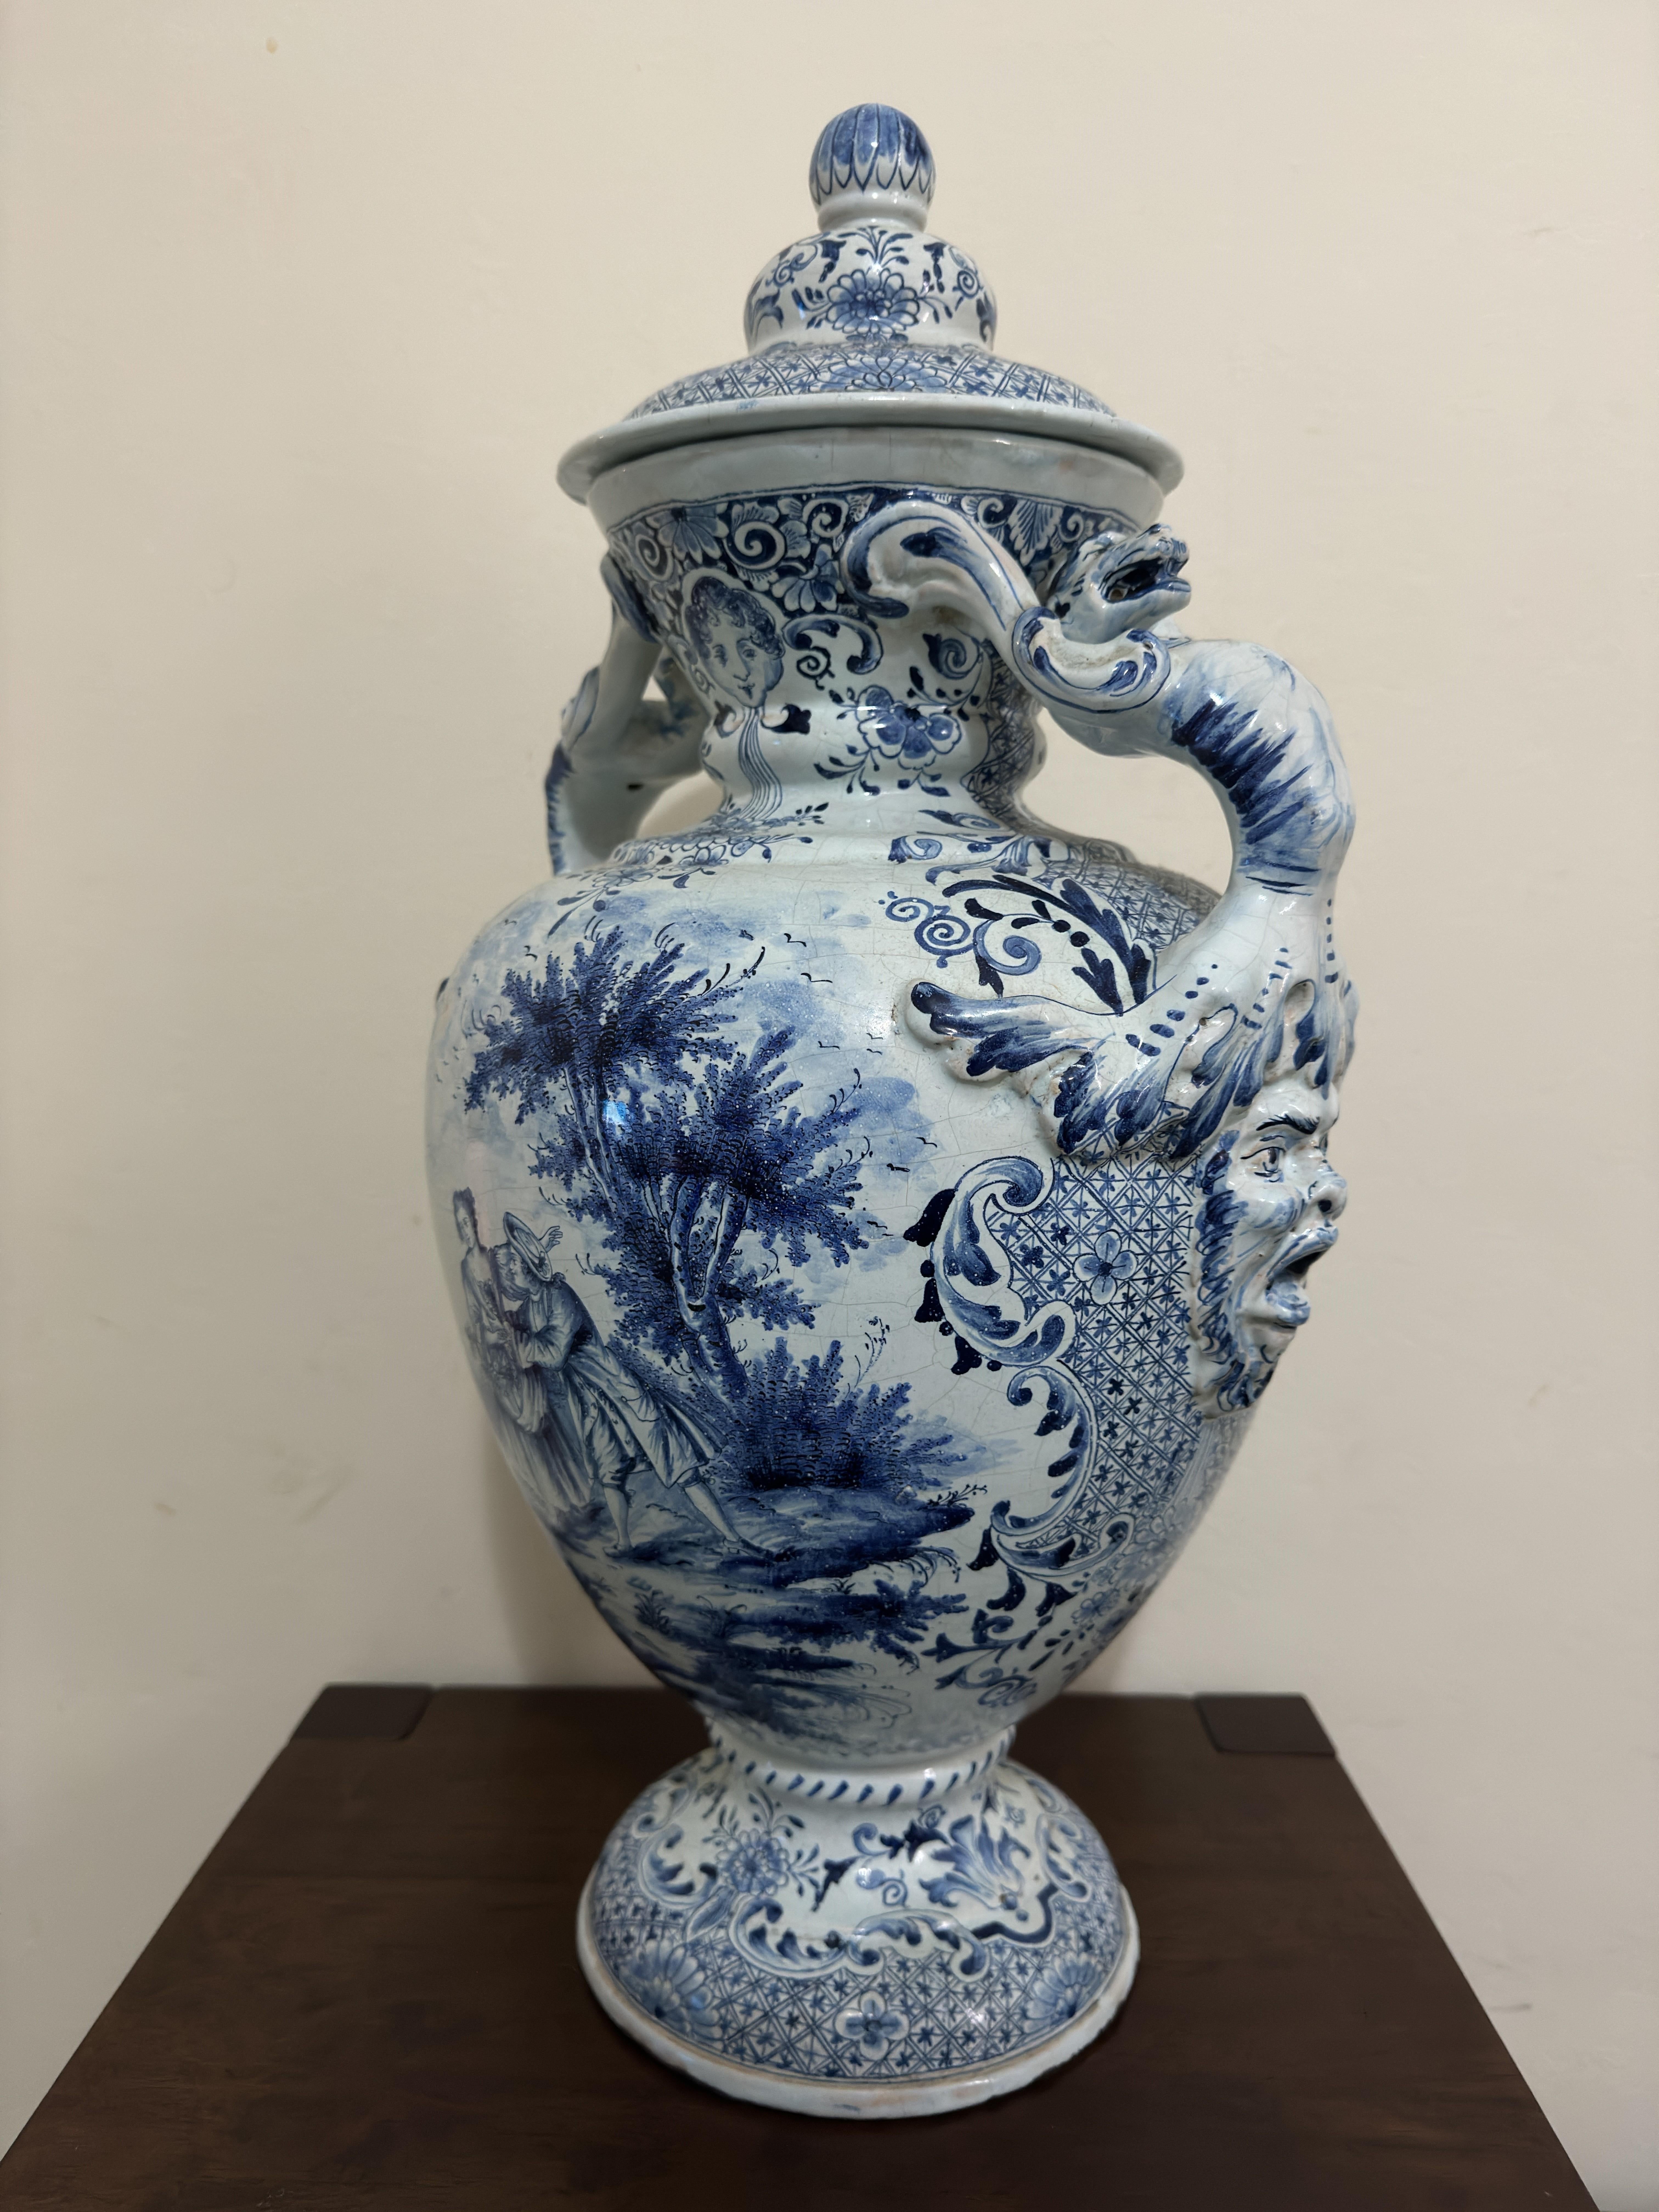 Große Delft Urne / Vase aus dem 18. Jahrhundert, mit tierverzierten Henkeln, 
in Blau gemalt mit Flusslandschaften, einem Liebespaar und einer Brücke, eingefasst von Blattwerk und Blattbordüren.  Ein gutes Beispiel für ein niederländisches